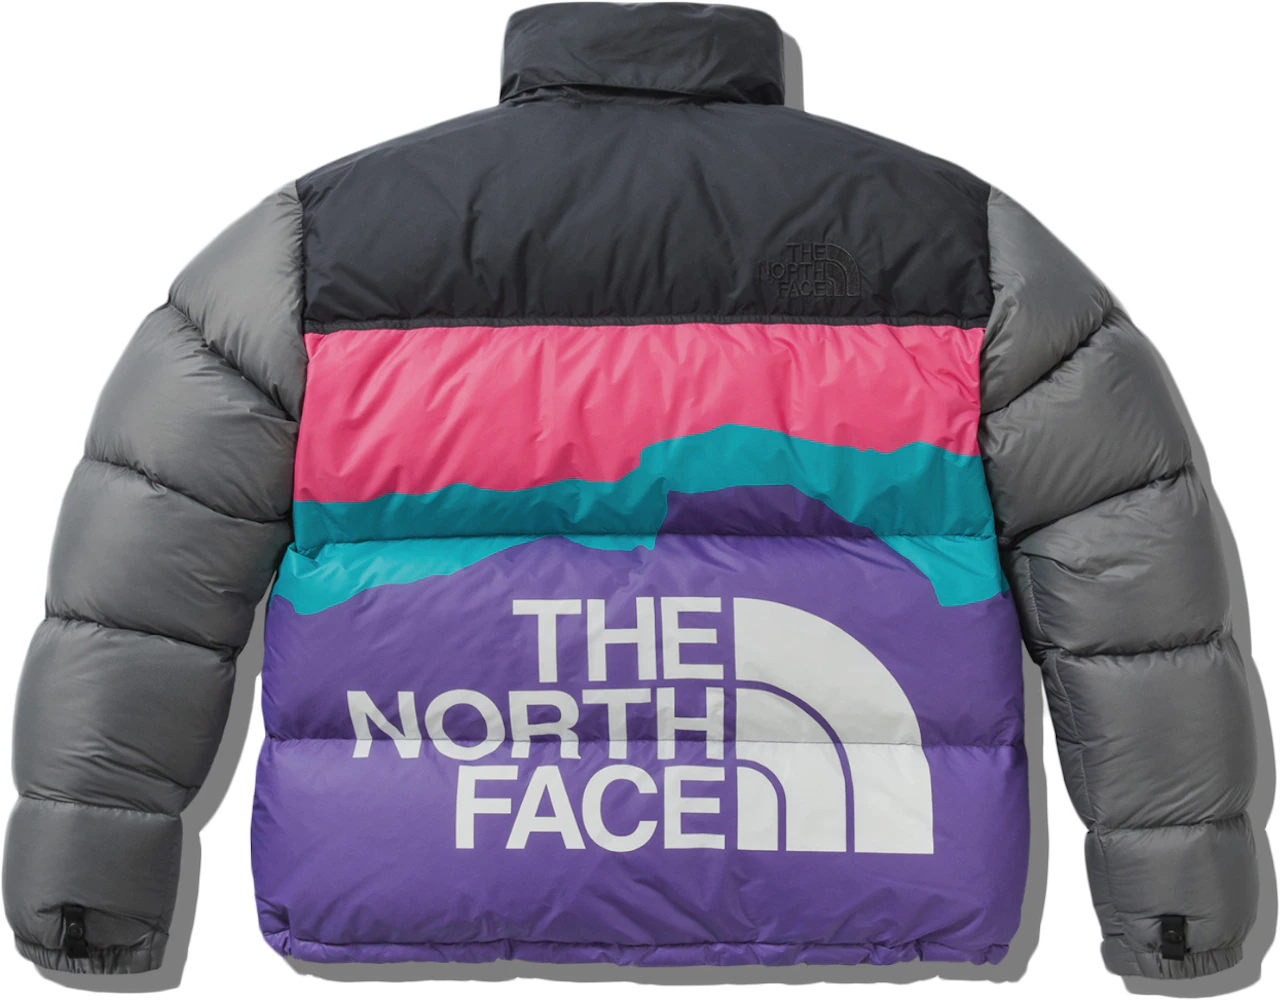 The North Face x Invincible 1996 Retro Nuptse Jacket Multi